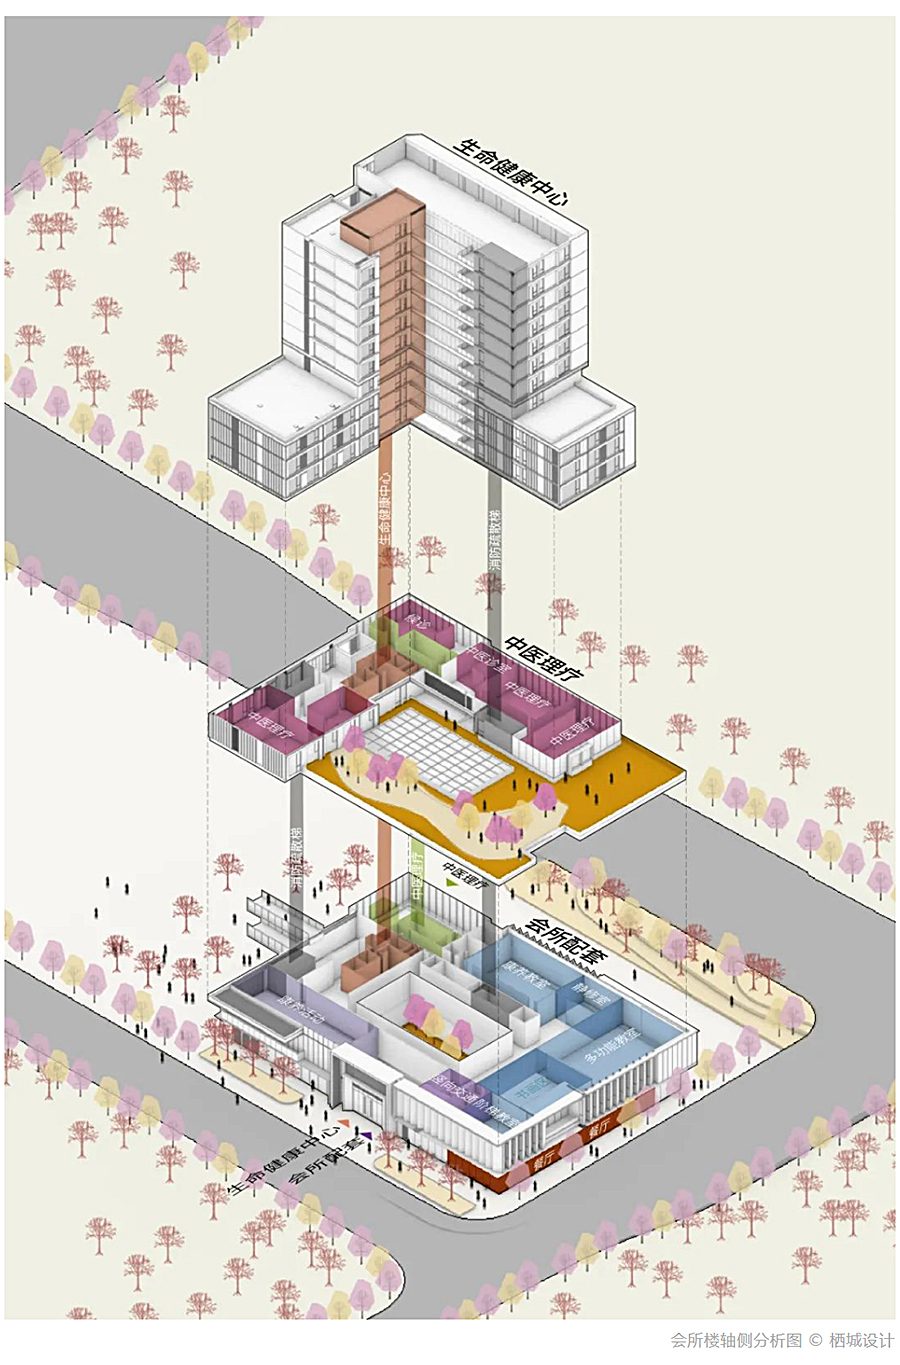 混合的真实：城市型康养综合体的创新实践-_-元垄绍兴美好之城_0009_图层-10.jpg